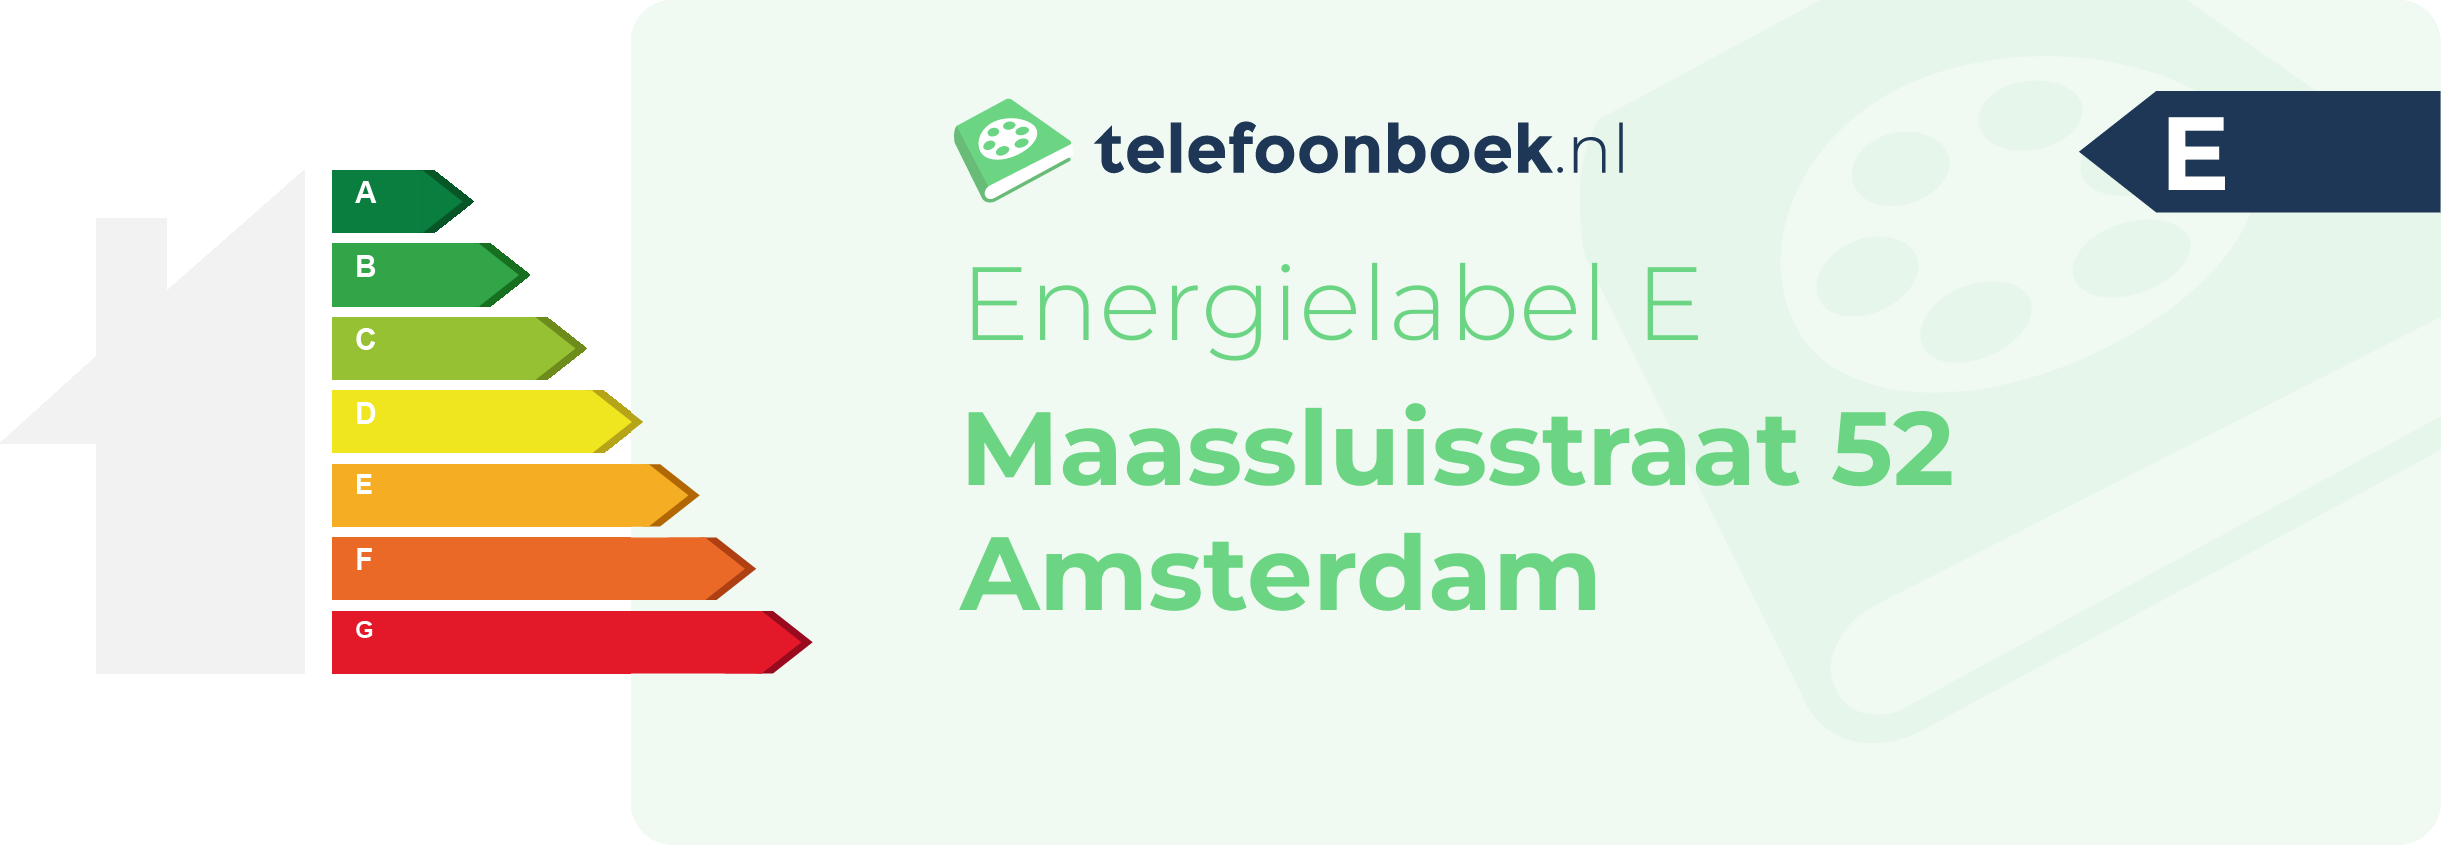 Energielabel Maassluisstraat 52 Amsterdam